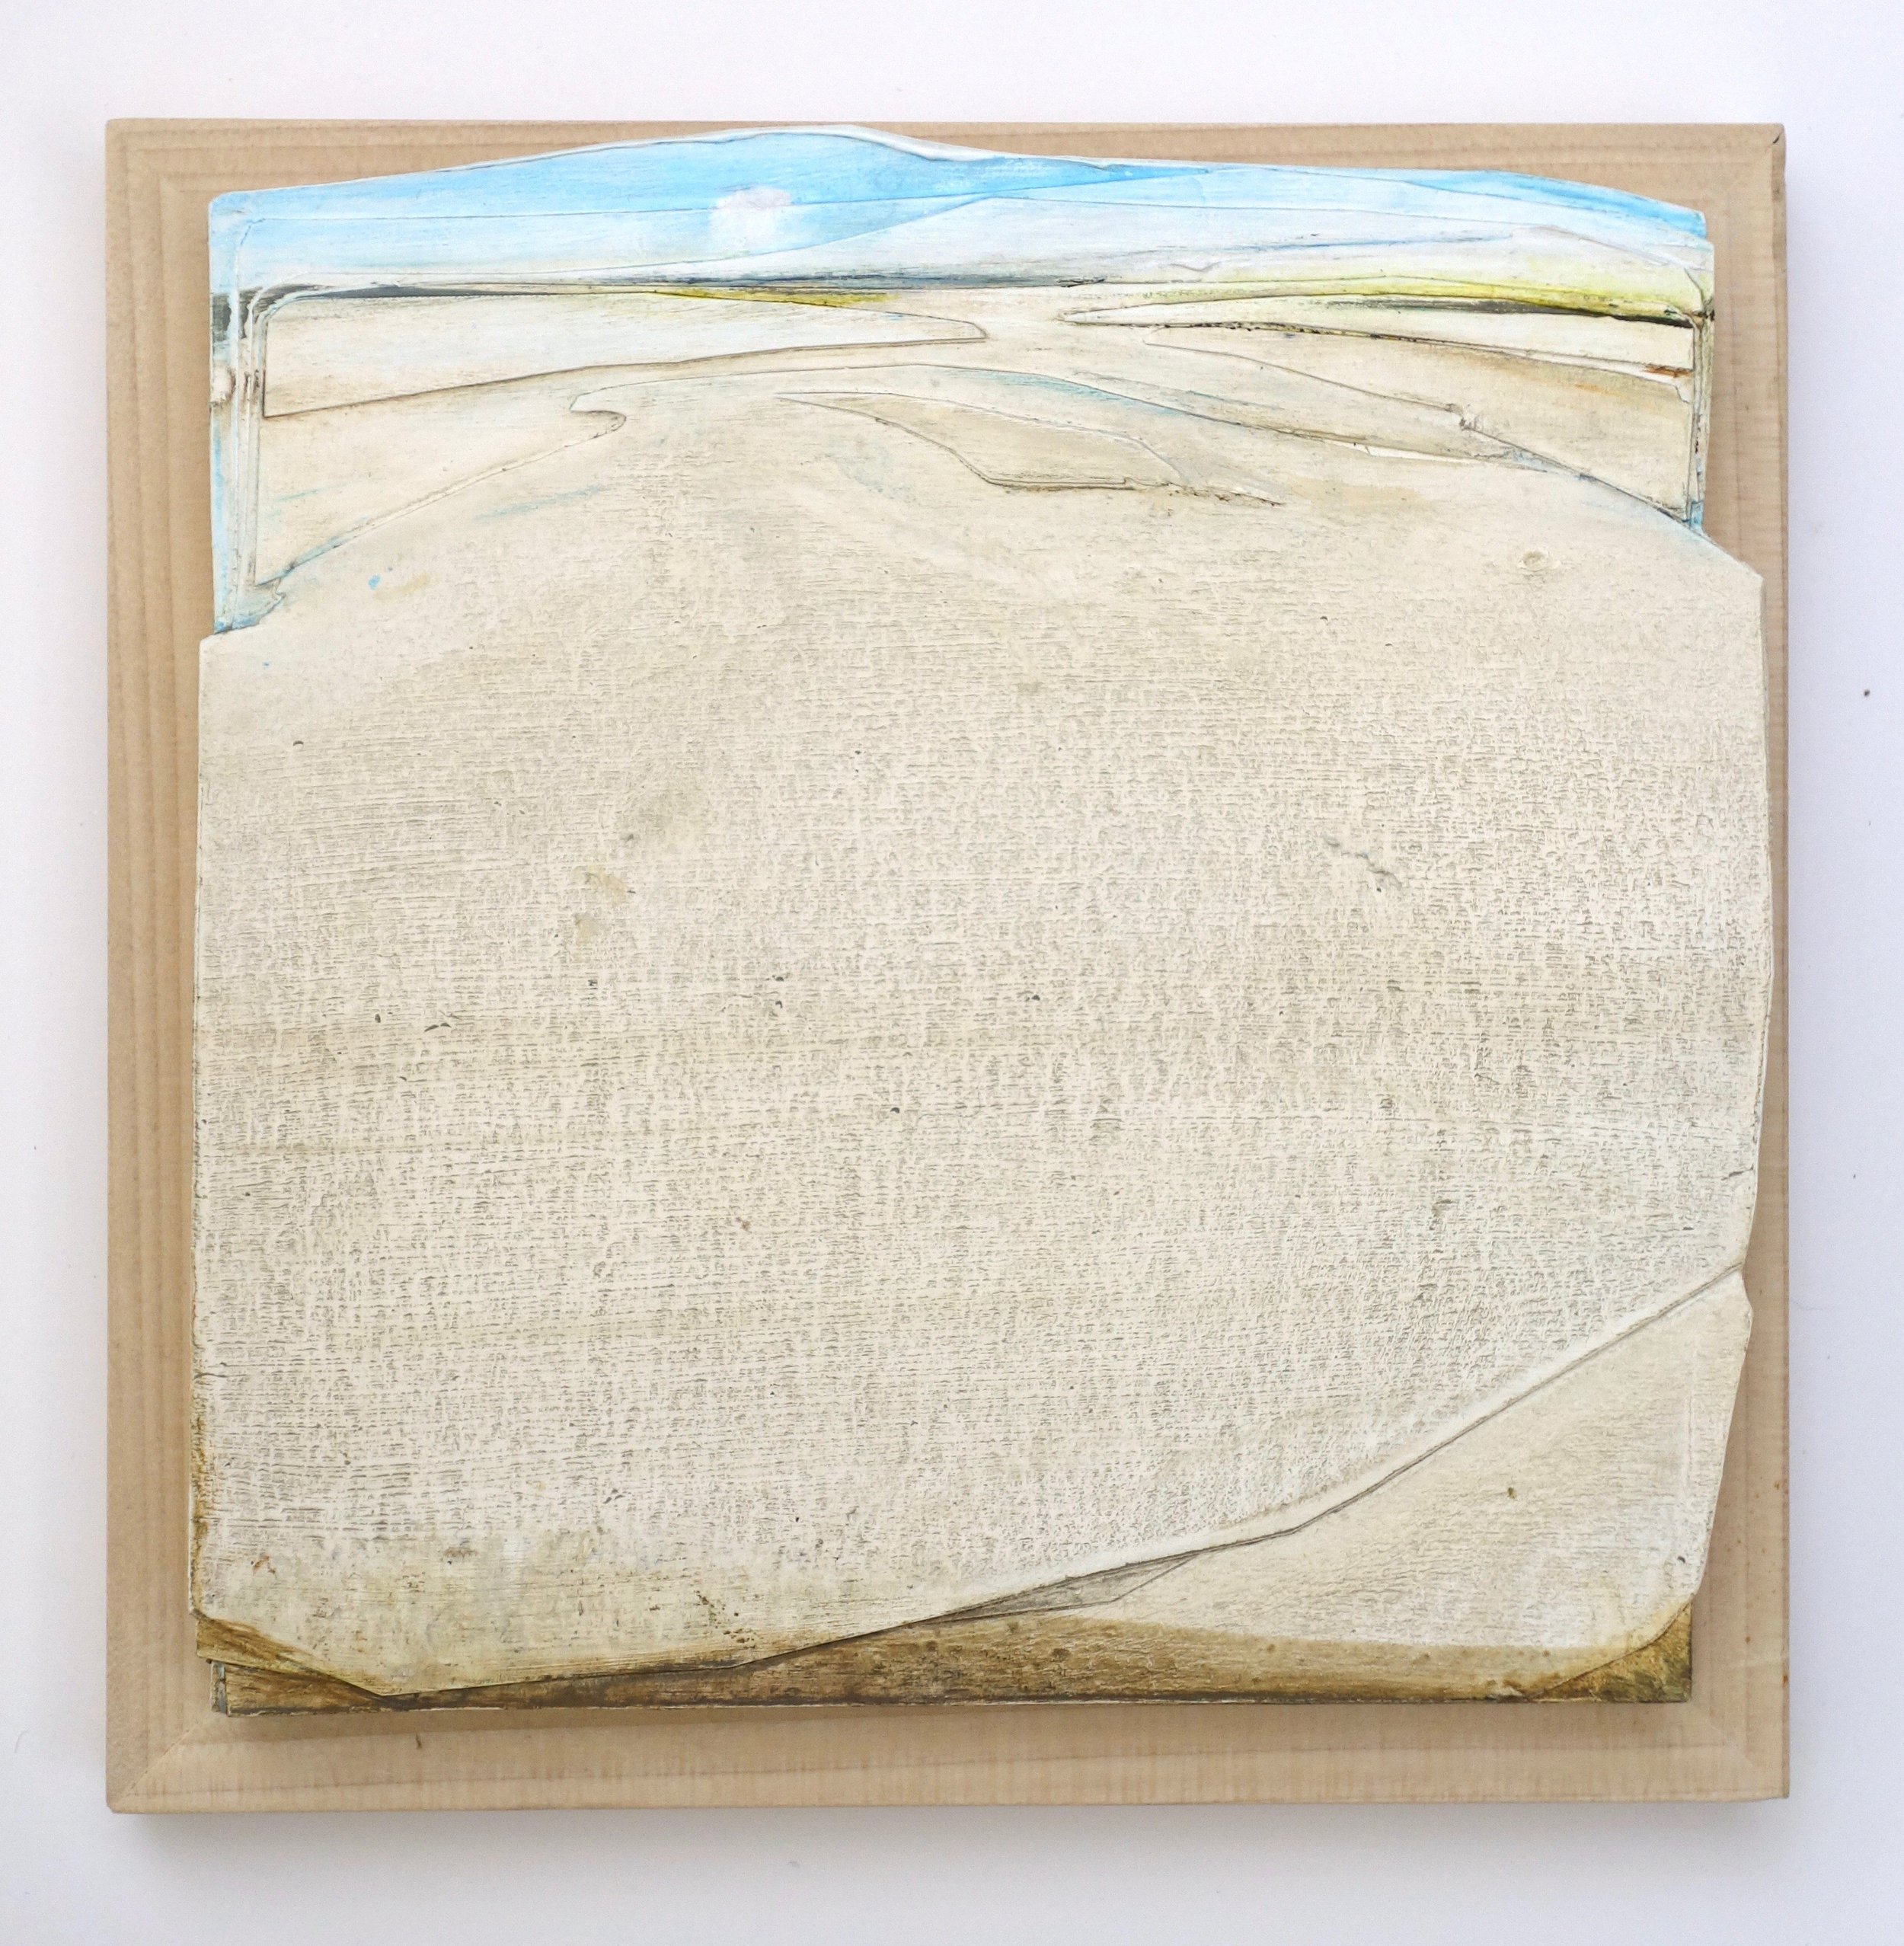   Lamina III (desert wash)   oil, paper on panel  7 x 7”  2021     